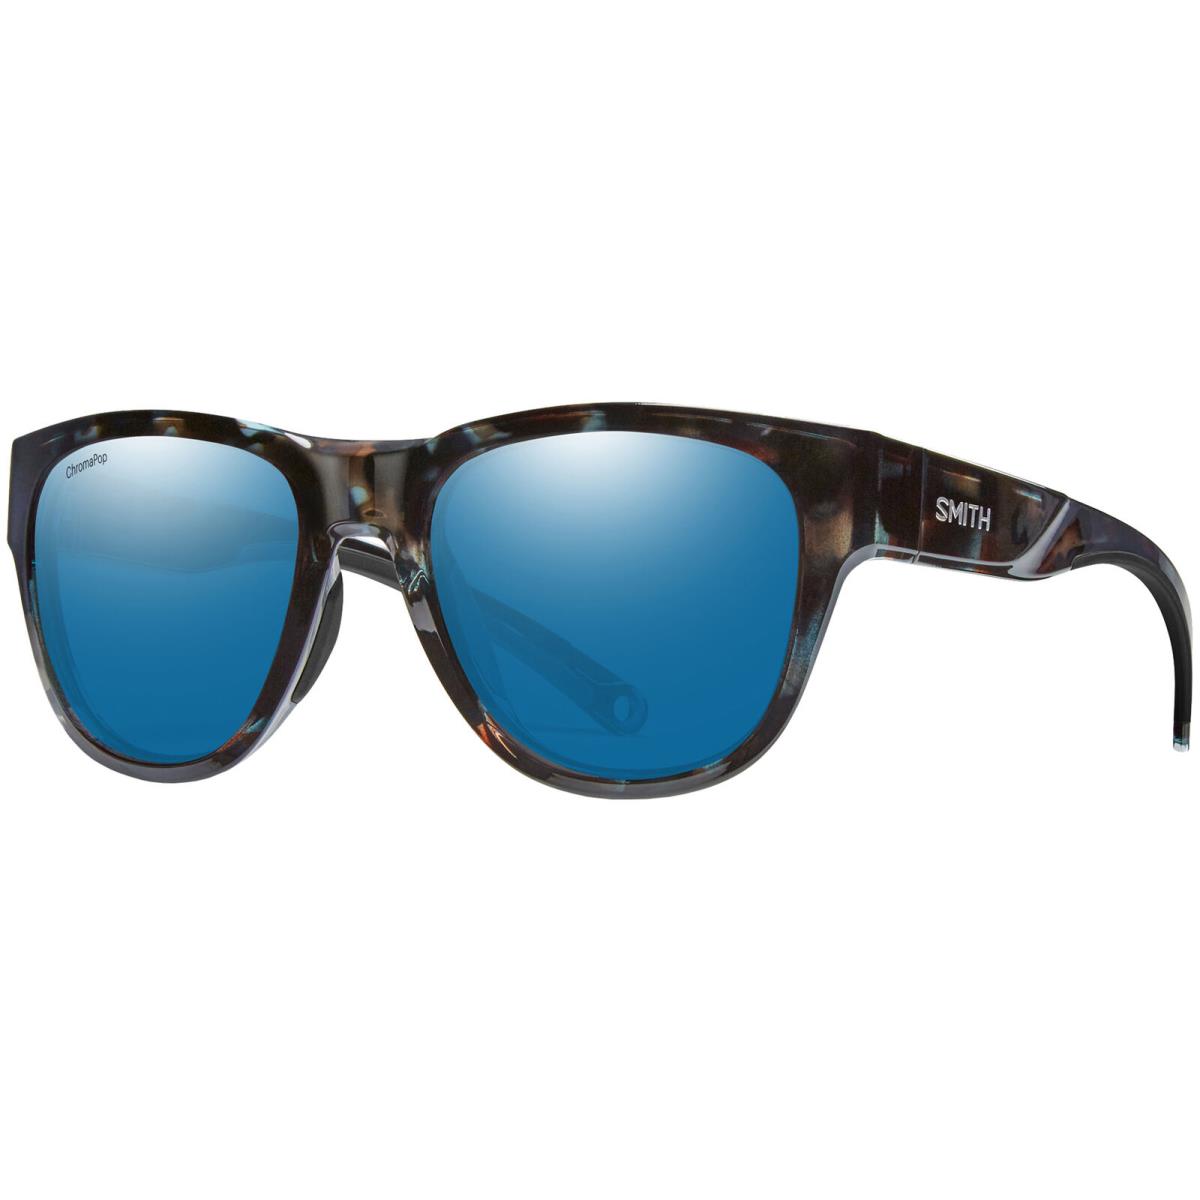 Smith Optics Rockaway Polarized Chromapop Round Sport Sunglasses 204316 Taiwan Sky Tortoise/Blue (IPR52QG)